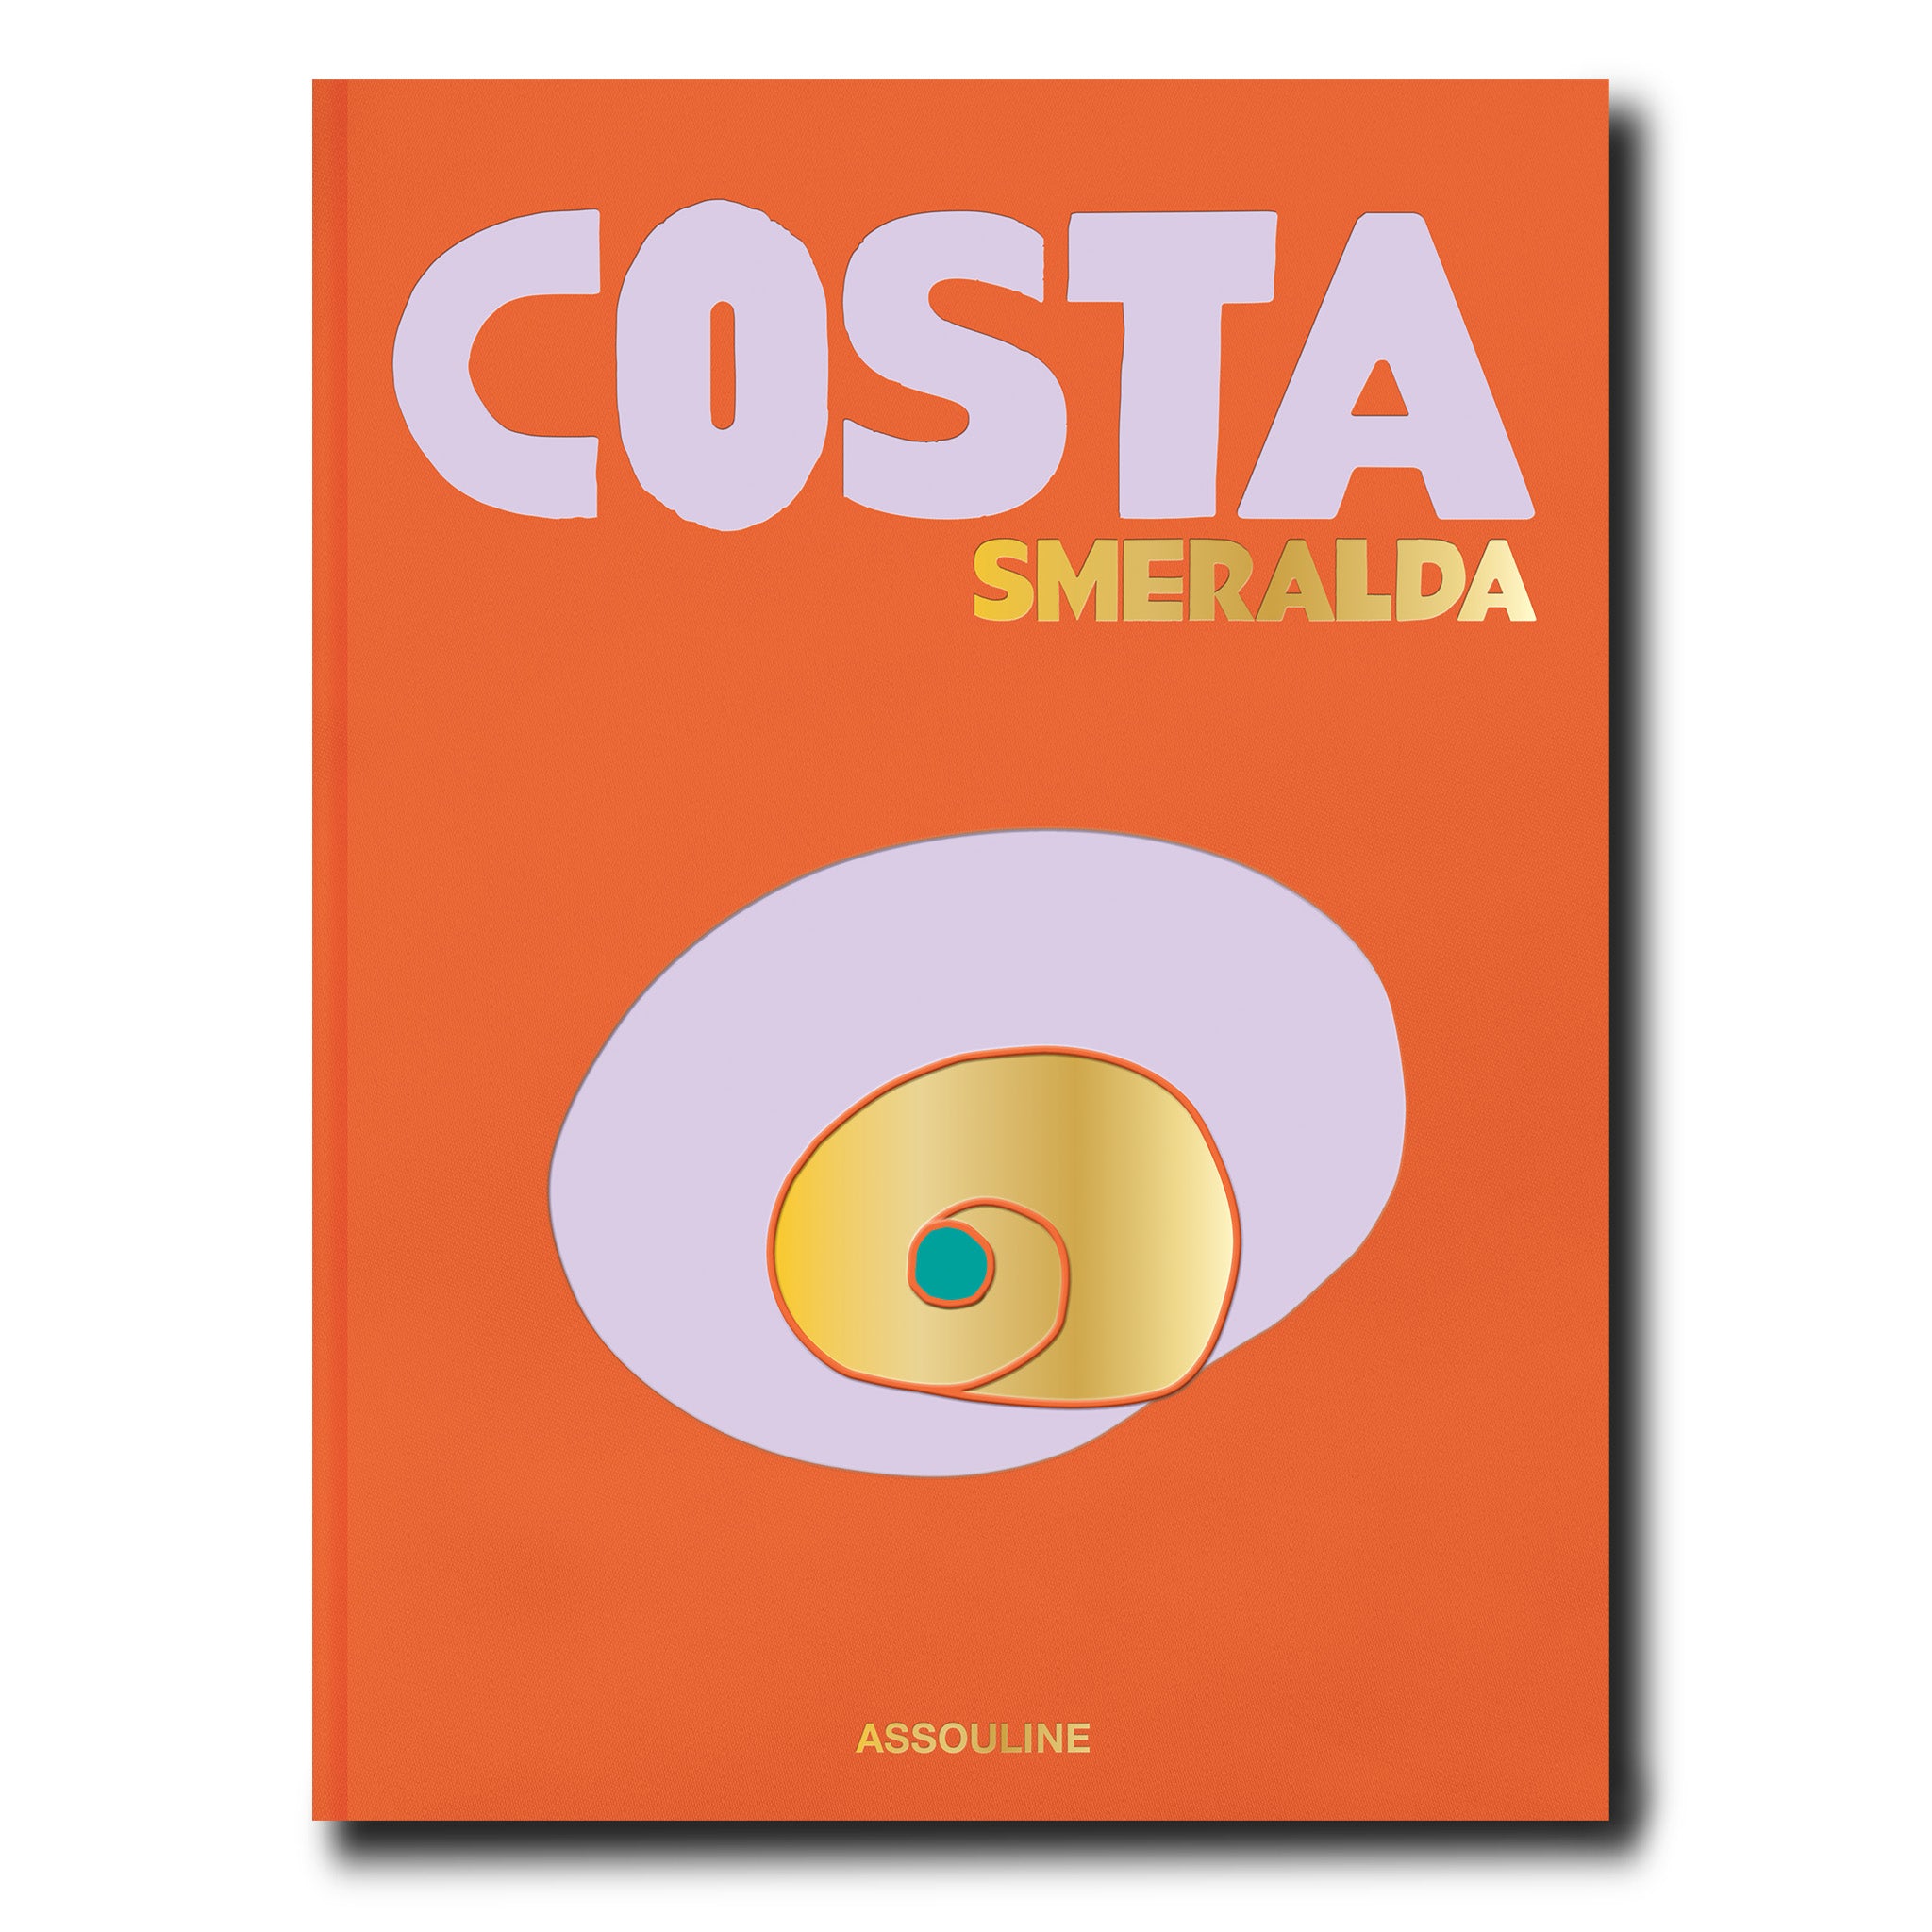 COSTA ESMERALDA, libro decorativo sobre viajes de Assouline